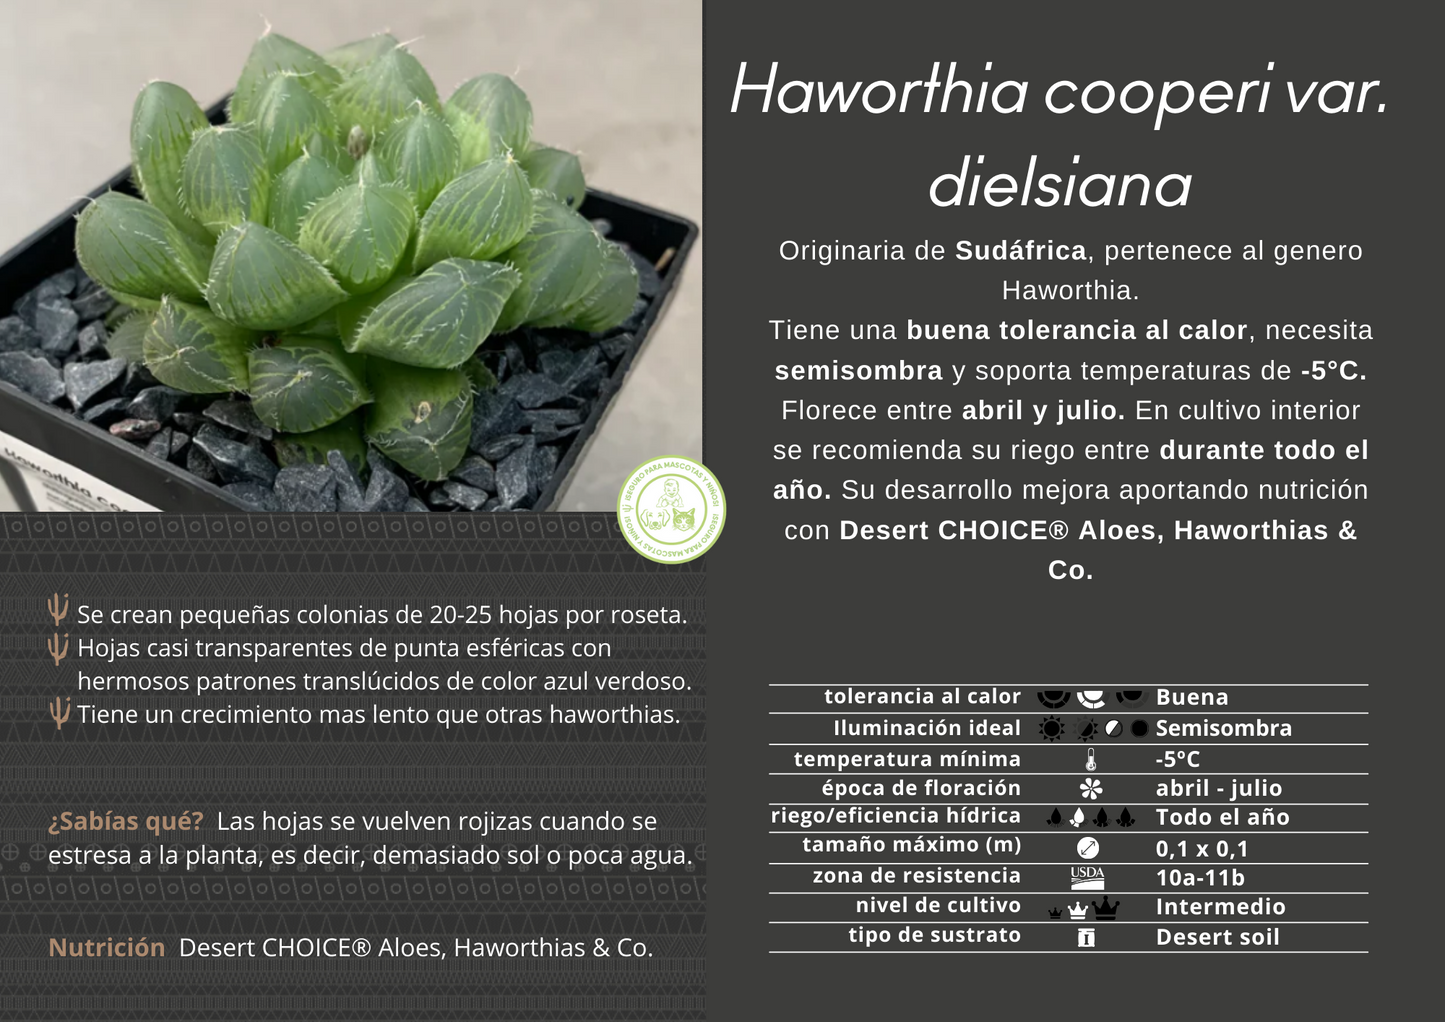 Haworthia cooperi var. dielsisch